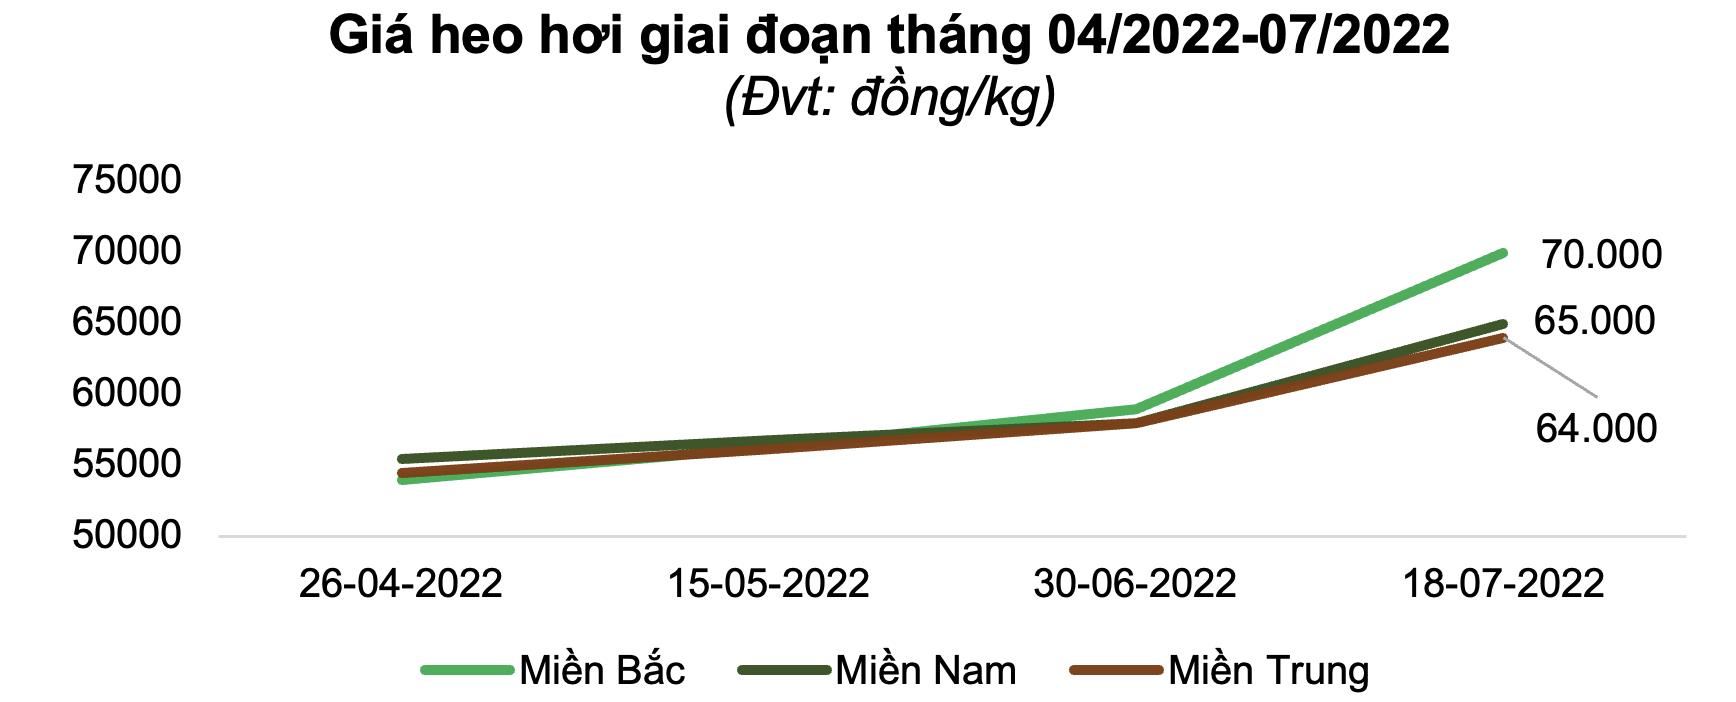 Ngành chăn nuôi Việt Nam lép vế trước các doanh nghiệp nước ngoài  Nhịp  sống kinh tế Việt Nam  Thế giới